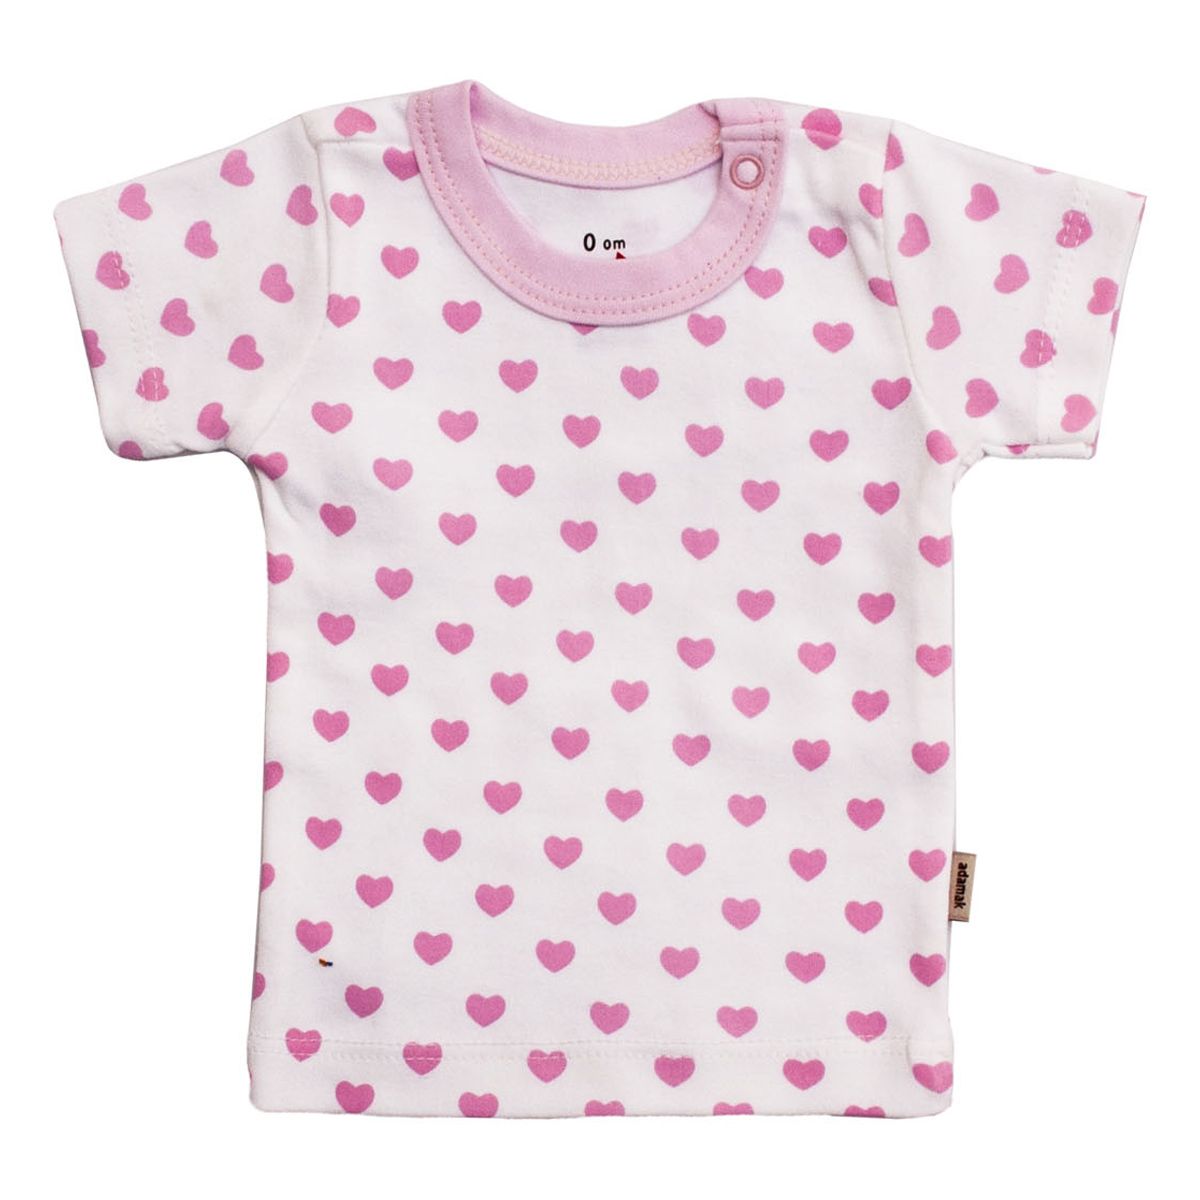  تی شرت آستین کوتاه نوزادی آدمک طرح قلب -  - 2